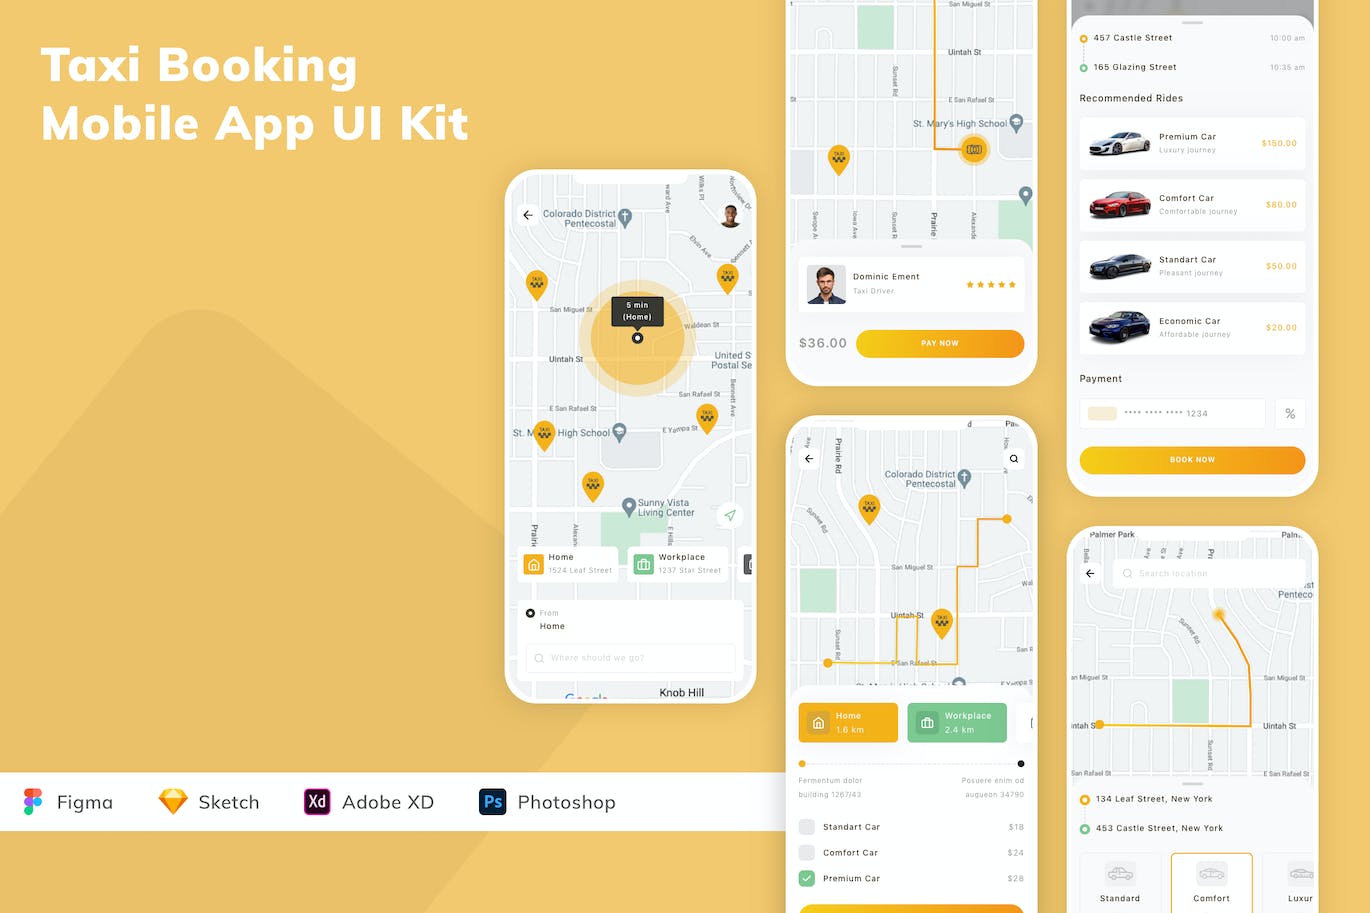 出租车预订 App UI Kit (FIG,SKETCH,XD,PSD)